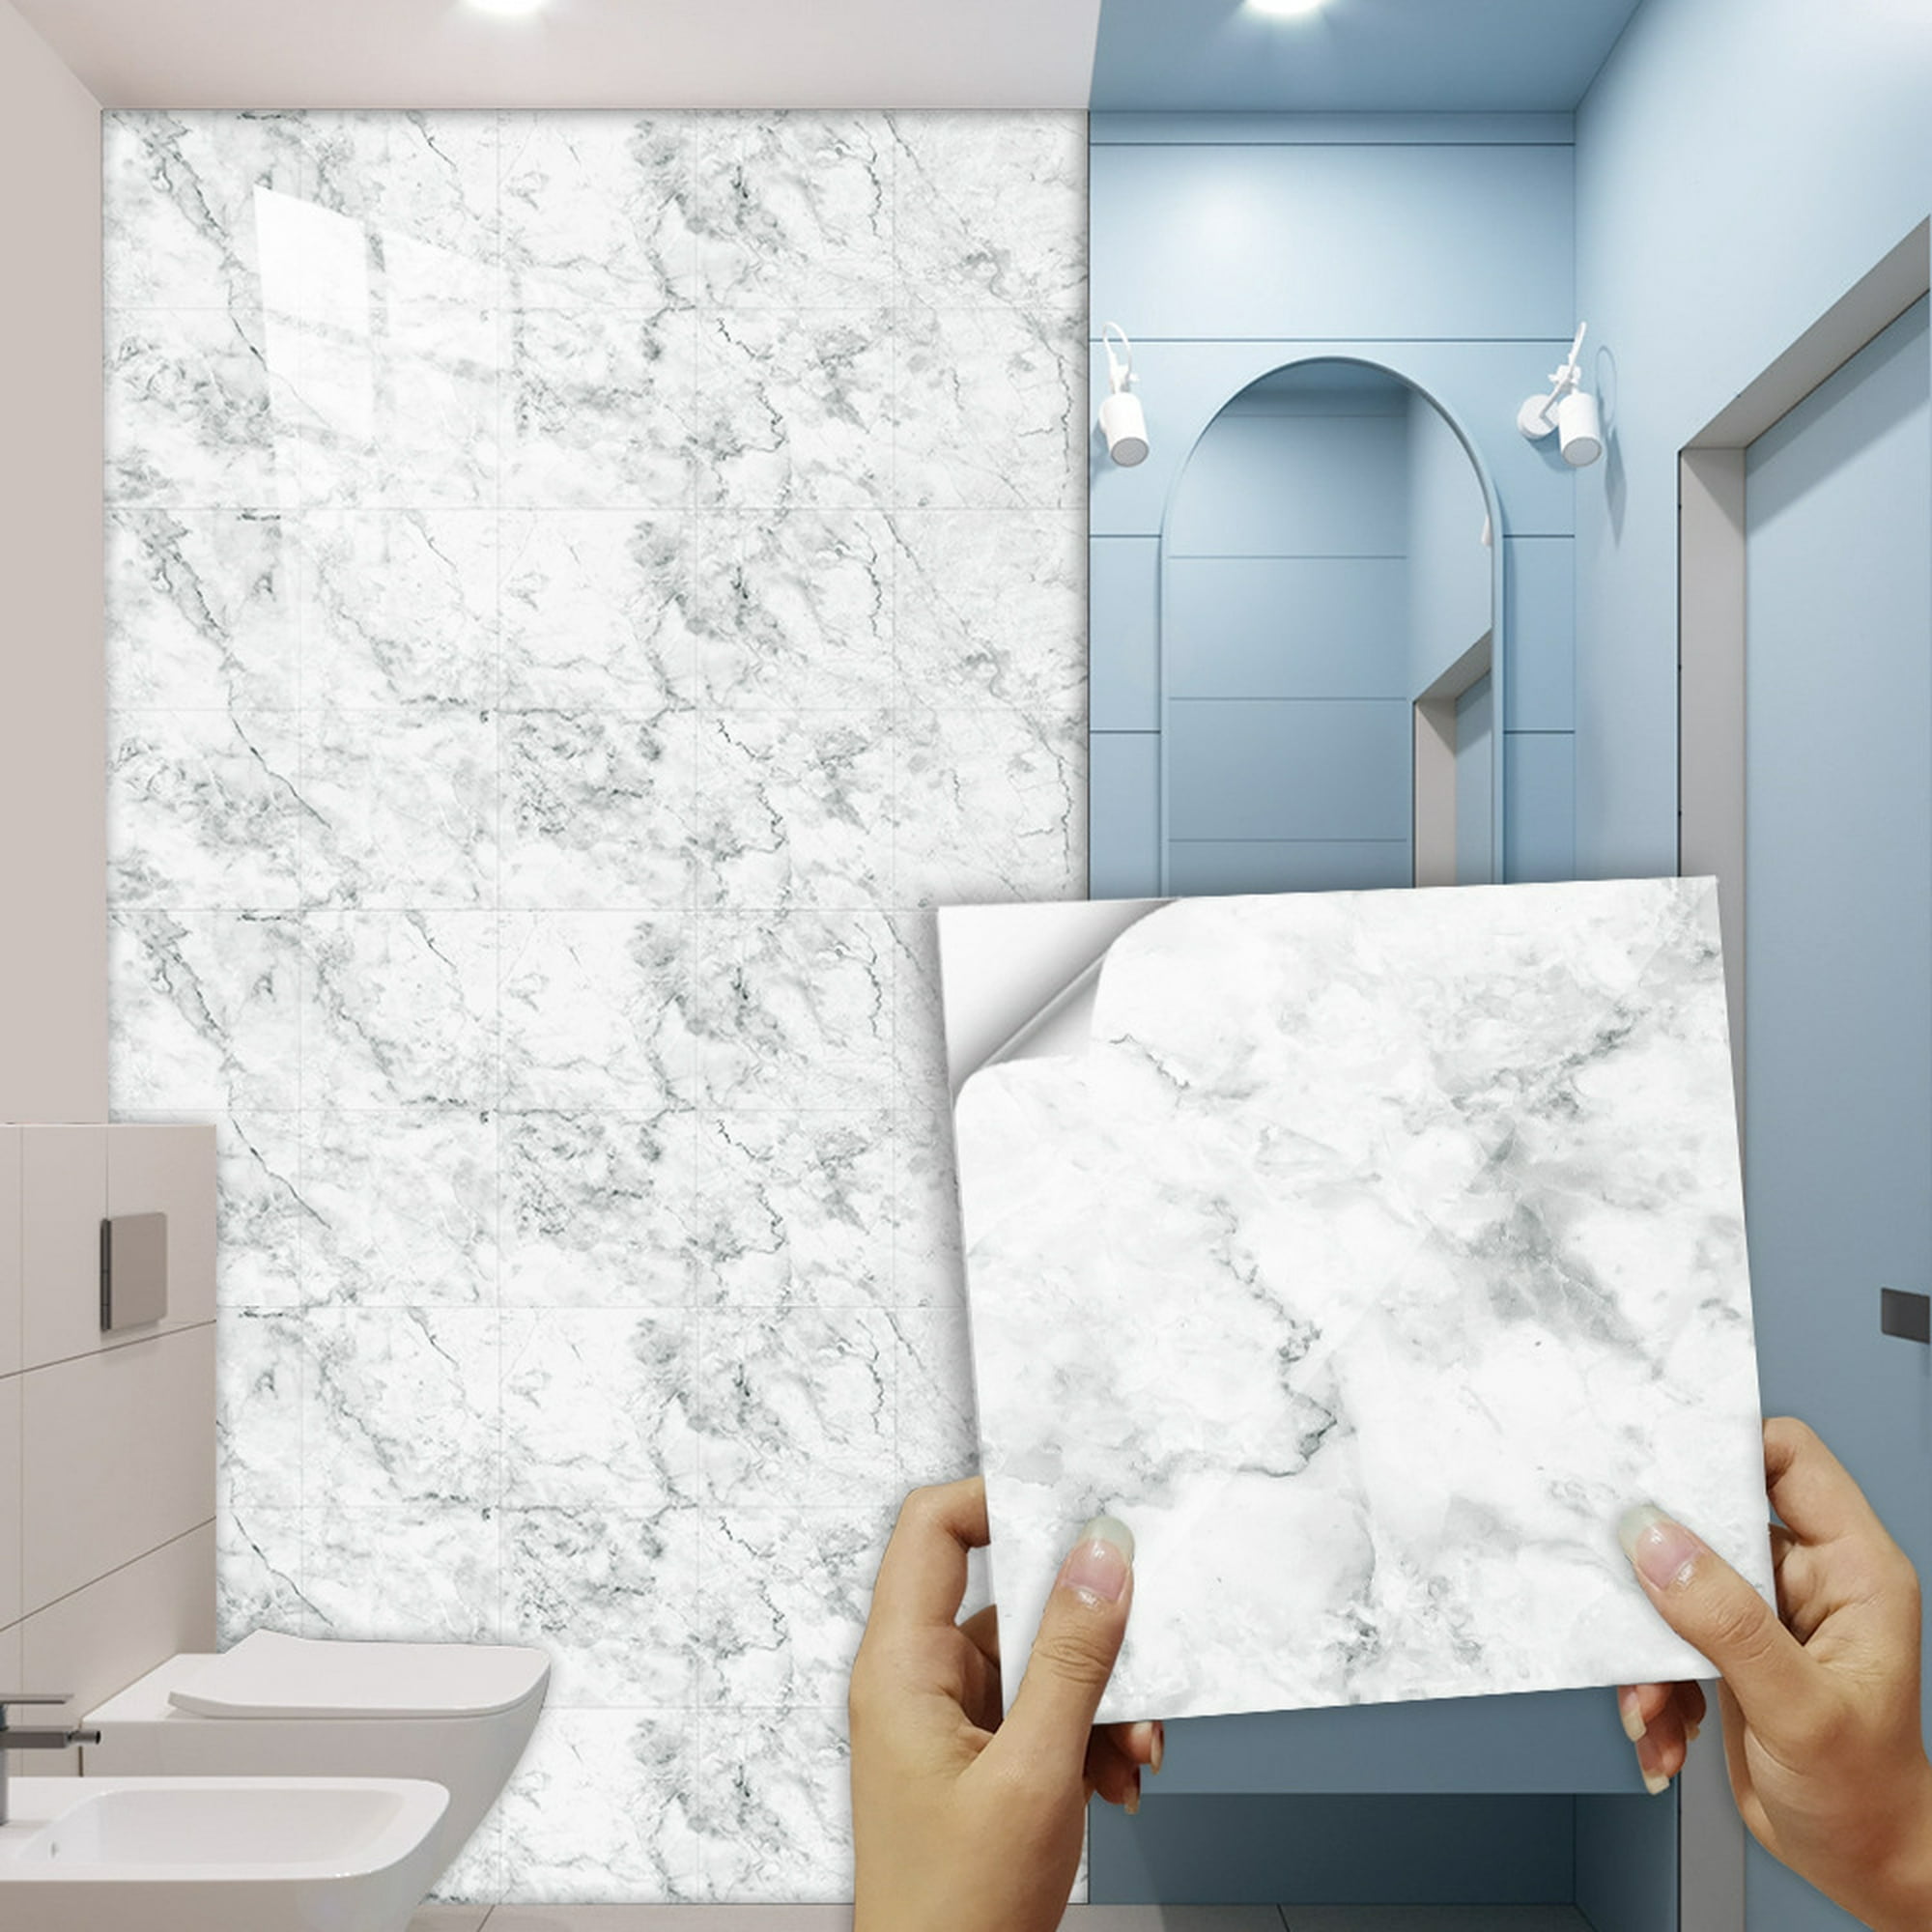 Etiqueta engomada impermeable del azulejo del baño del PVC para la etiqueta  engomada removible del piso de mármol blanco de la pared 30cm x 30cm  Autoadhesiva para el protector contra salpicaduras de